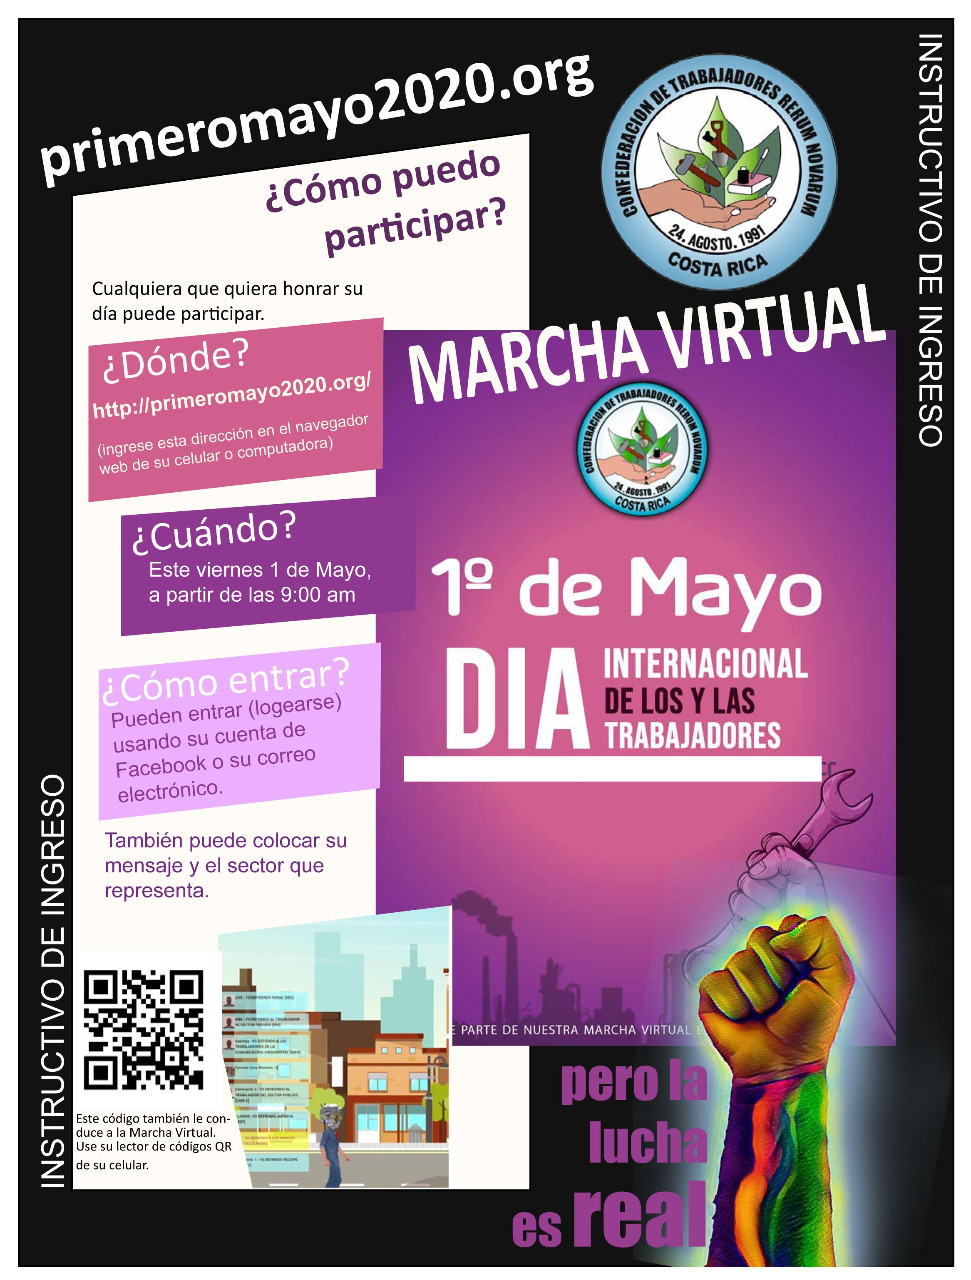 Sindicatos piden a trabajadores sumarse a marcha virtual del 1 de mayo